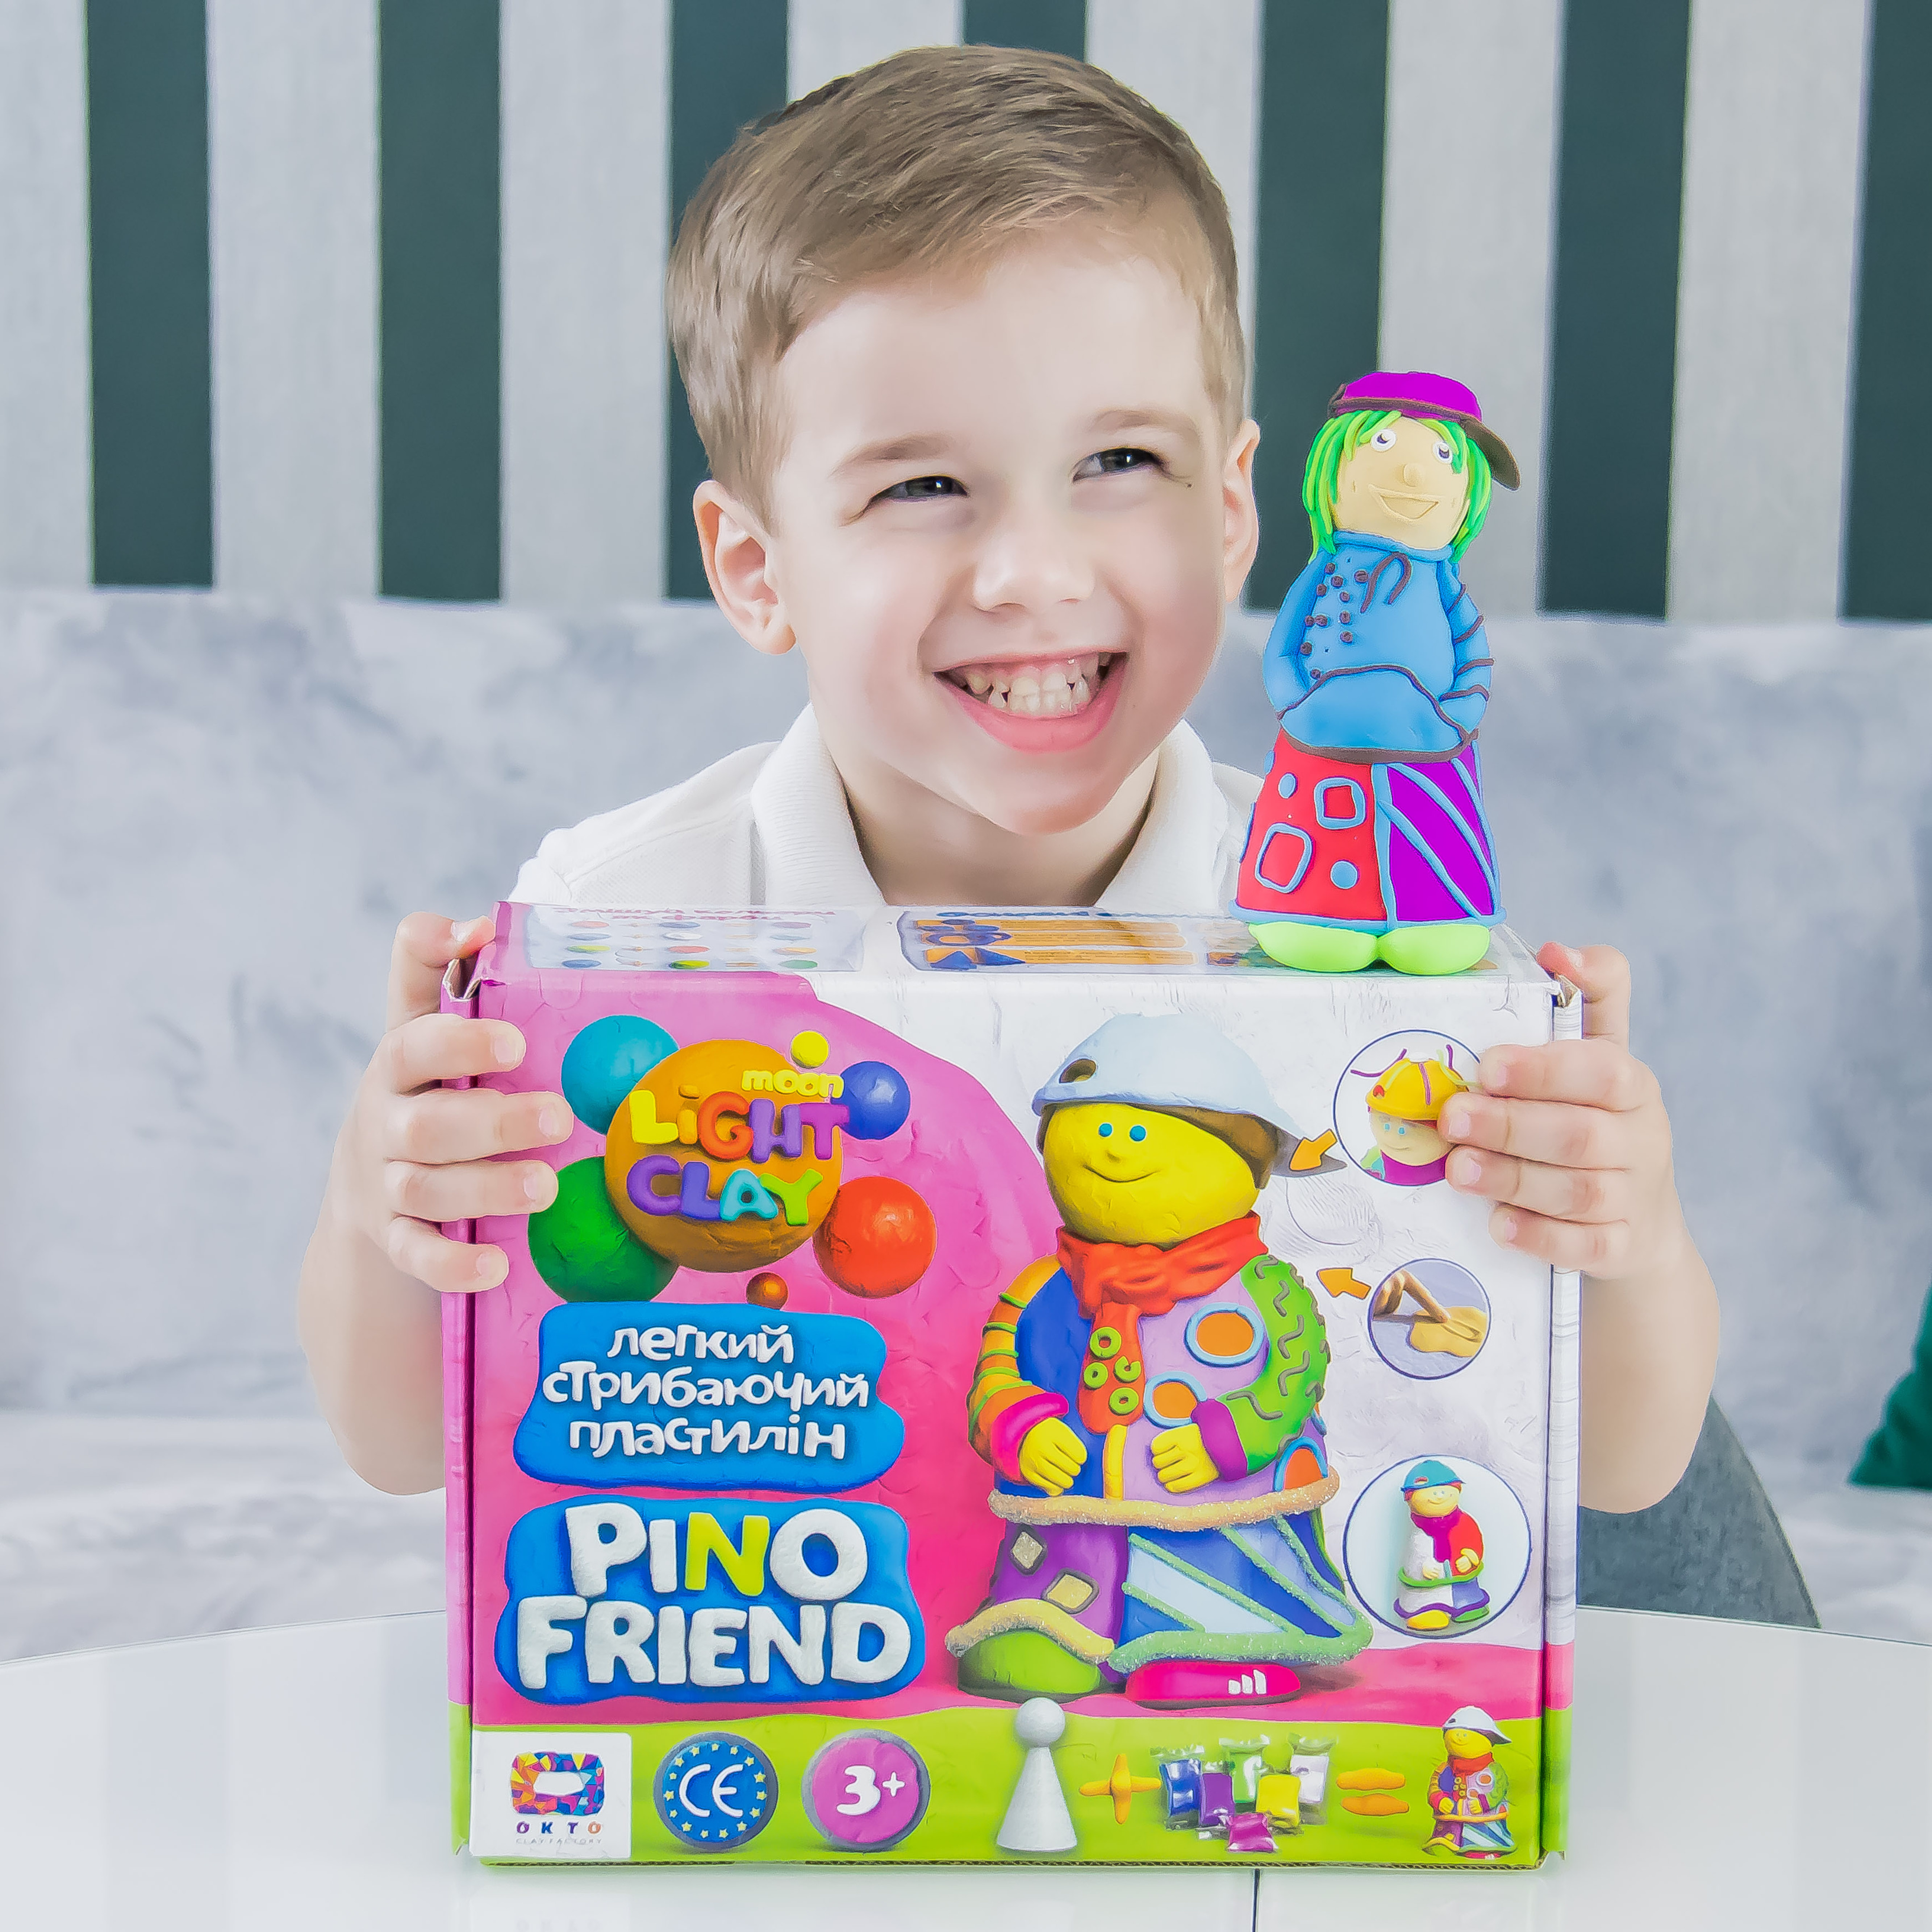 Knete Modellierung Knetmasse Kinder Spielzeug Geschenk Idee Pino Friend Jackson